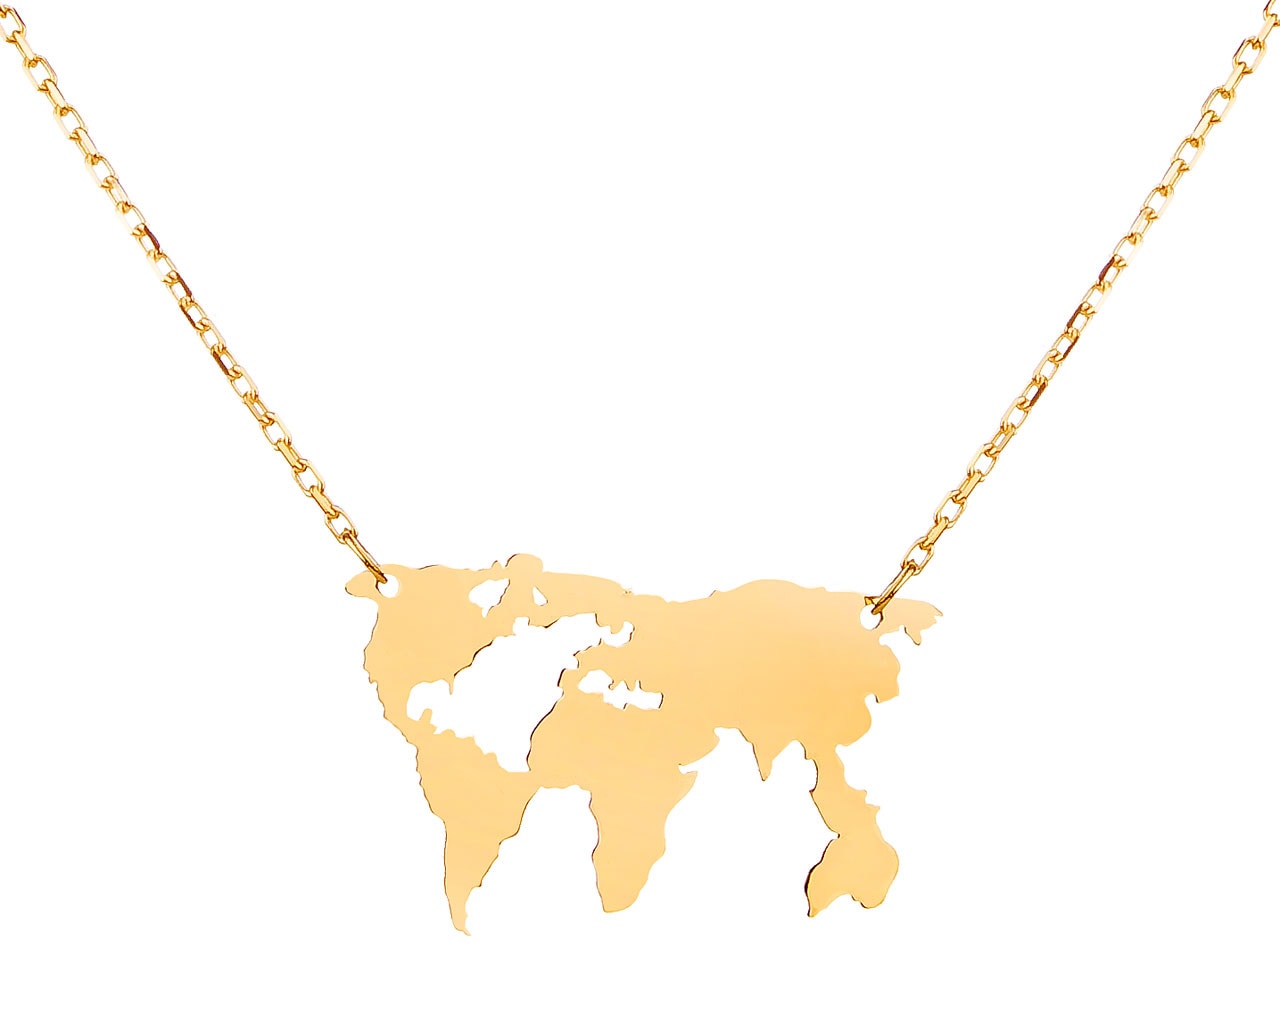 Zlatý náhrdelník, anker - mapa světa